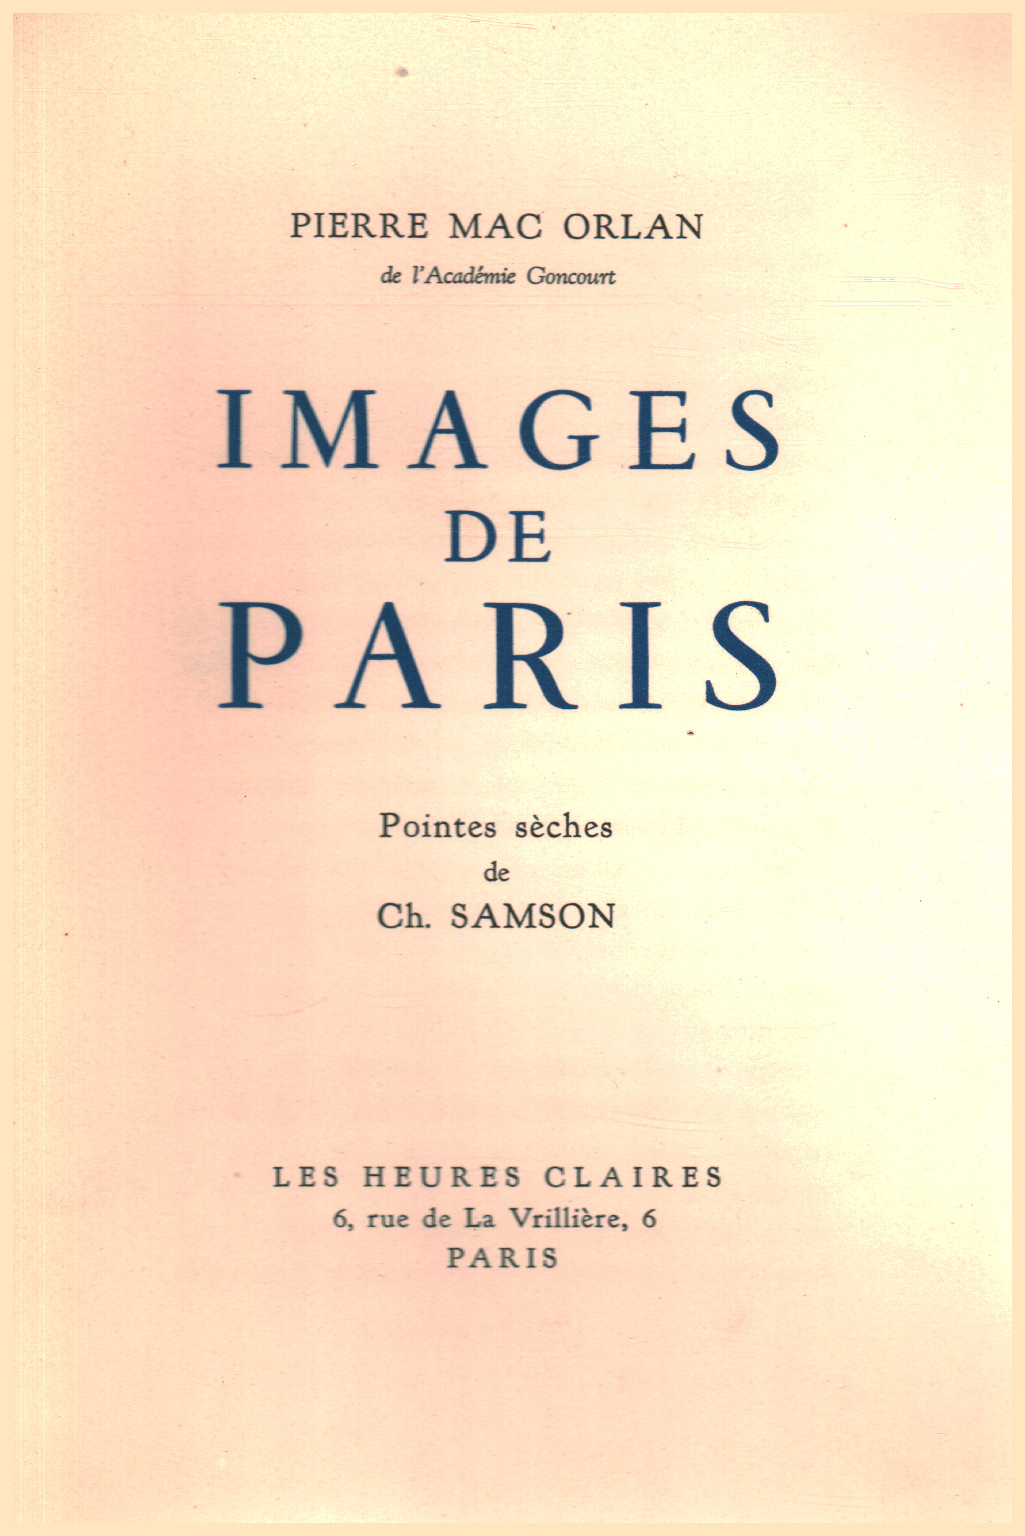 Images de Paris, s.zu.